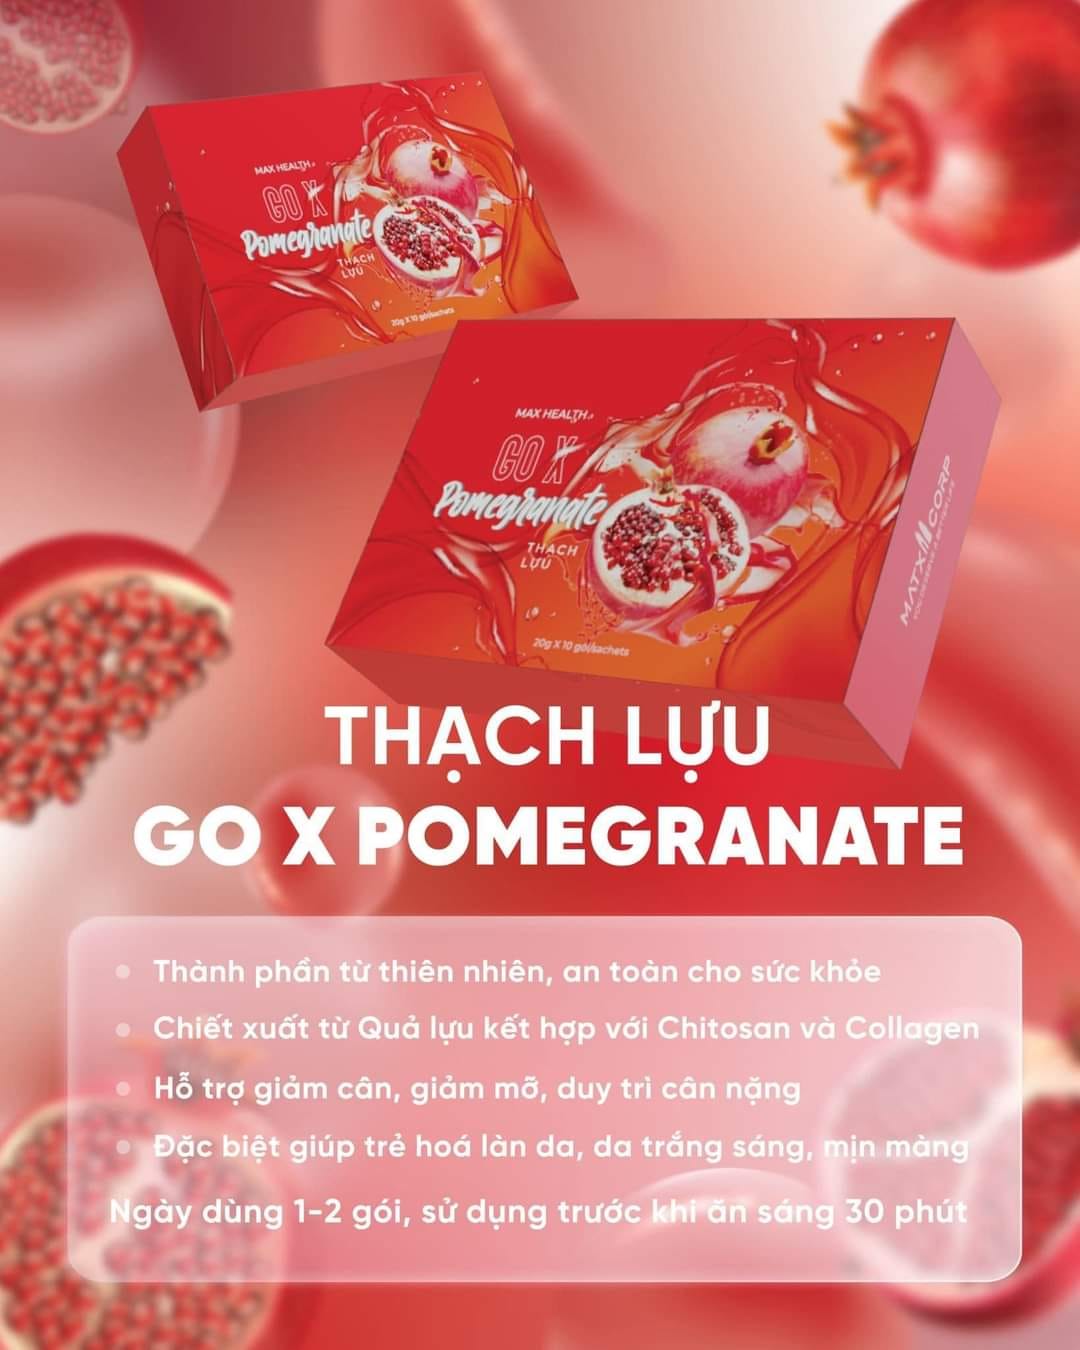 Thach Luu Giam Can Go X Pomegranate 2